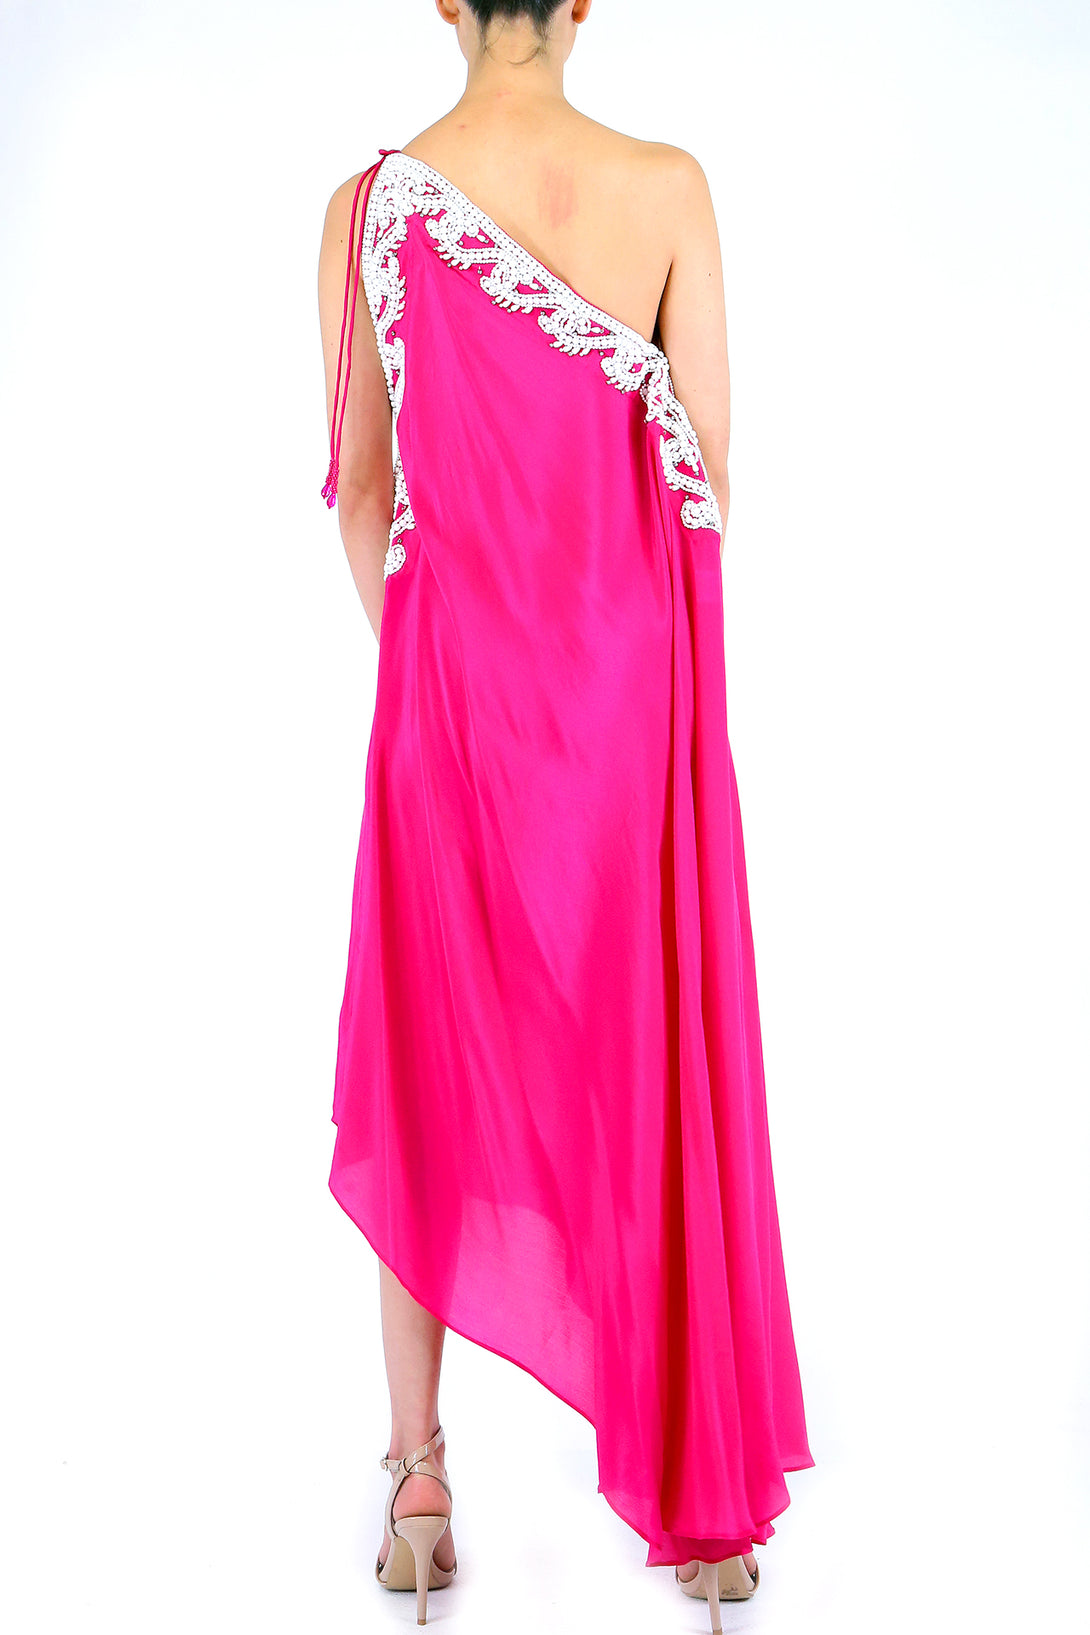  maxi hot pink dress, summer maxi dress, backless maxi dress, multiway maxi dress,